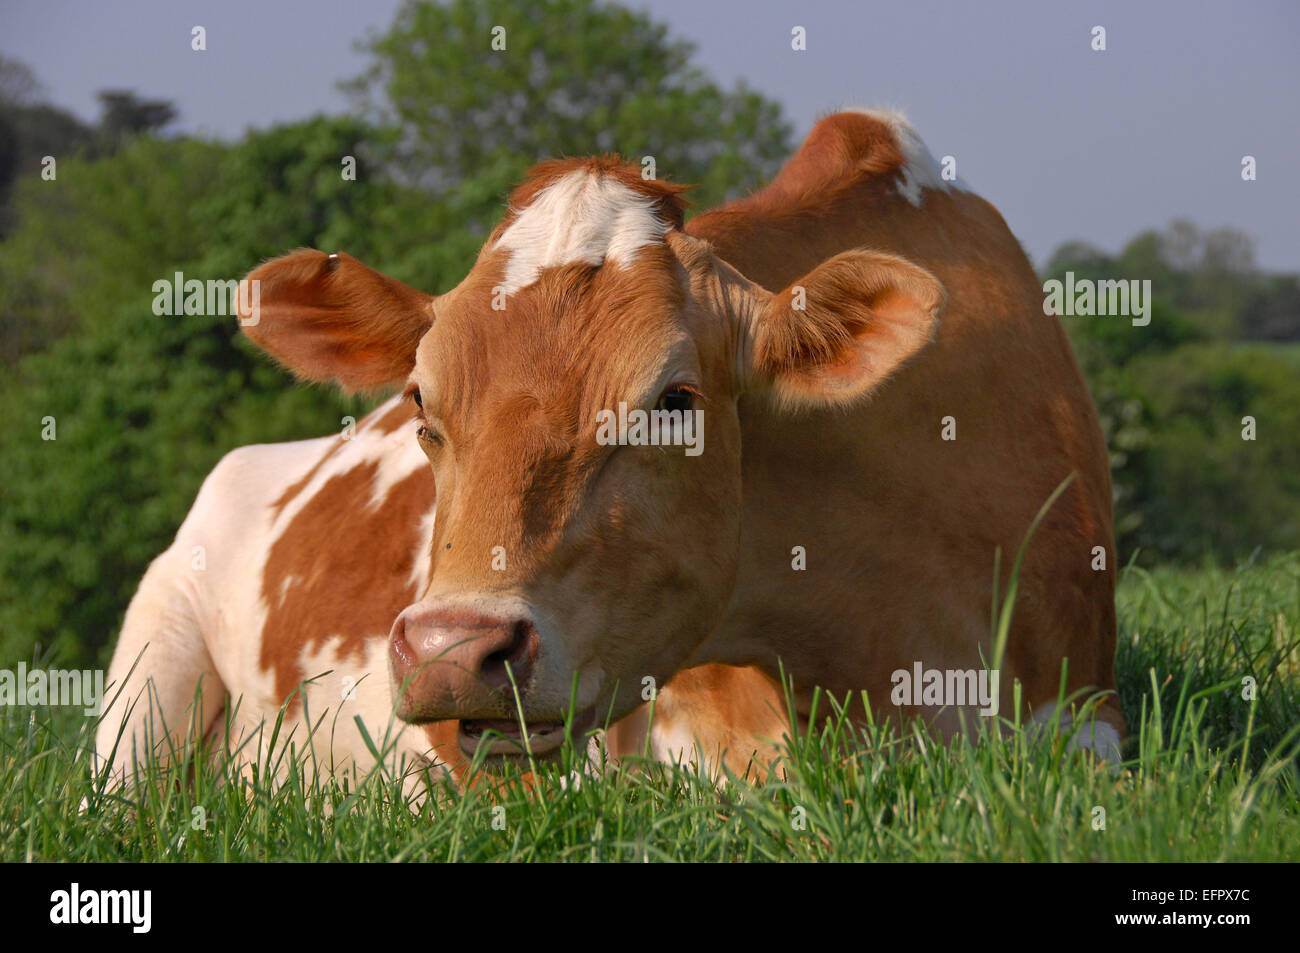 Guernsey Kühe liegen auf einer Weide reichen Rasen auf einem Bauernhof in North Devon, UK. Vor allem für ihre reiche cremige milk.a UK Molkerei gehalten Stockfoto